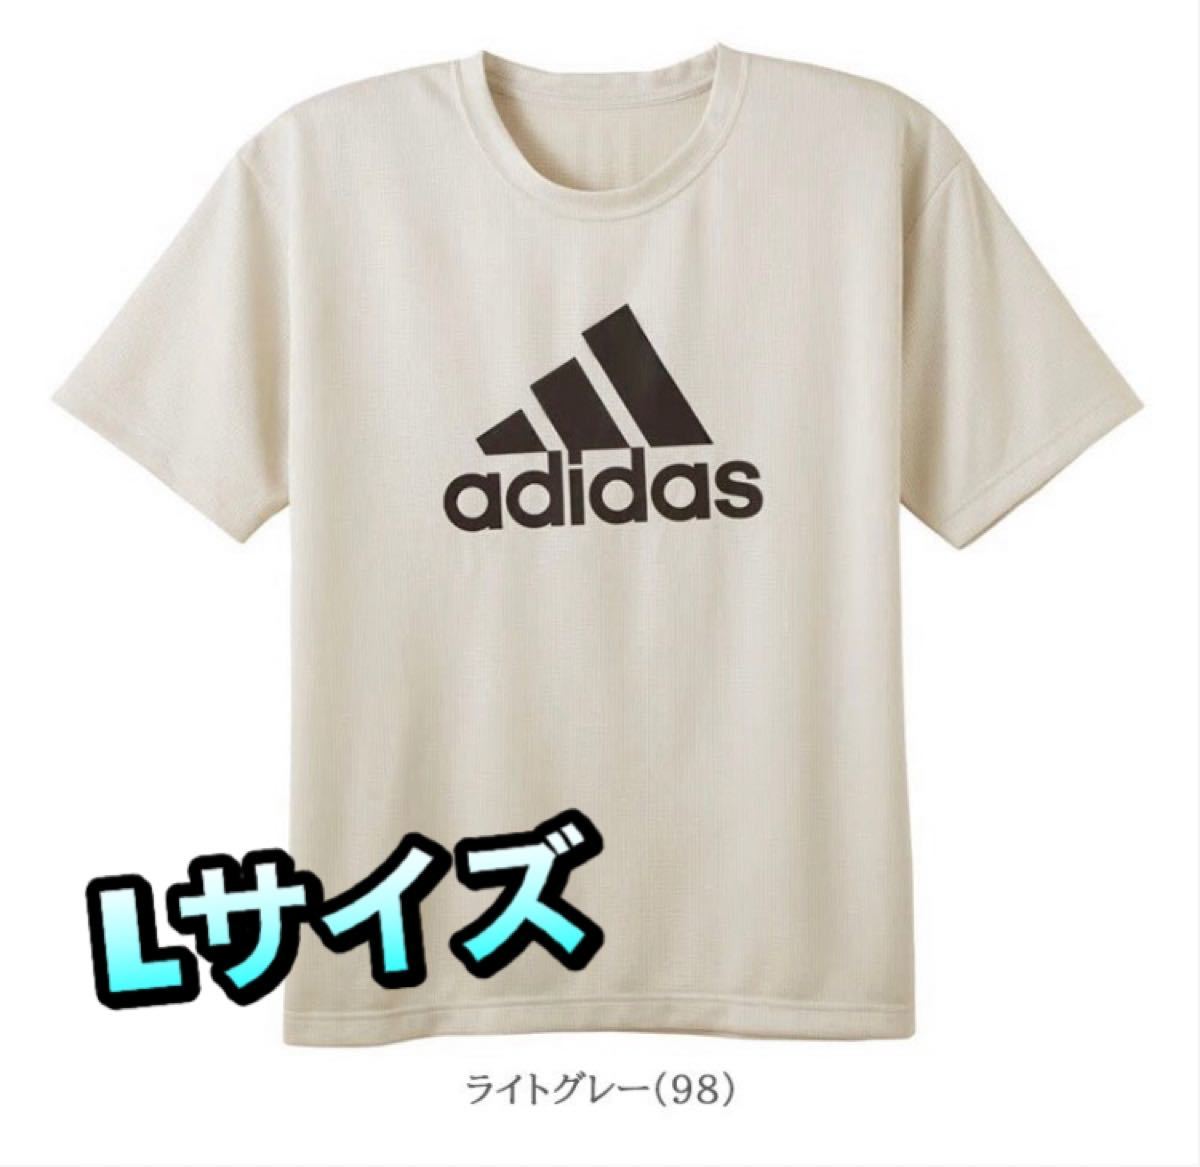 Paypayフリマ Adidas アディダス ロゴ メッシュ 半袖 Tシャツ メンズ ライトグレー Lサイズ グンゼ インナーｔシャツ Apu013a